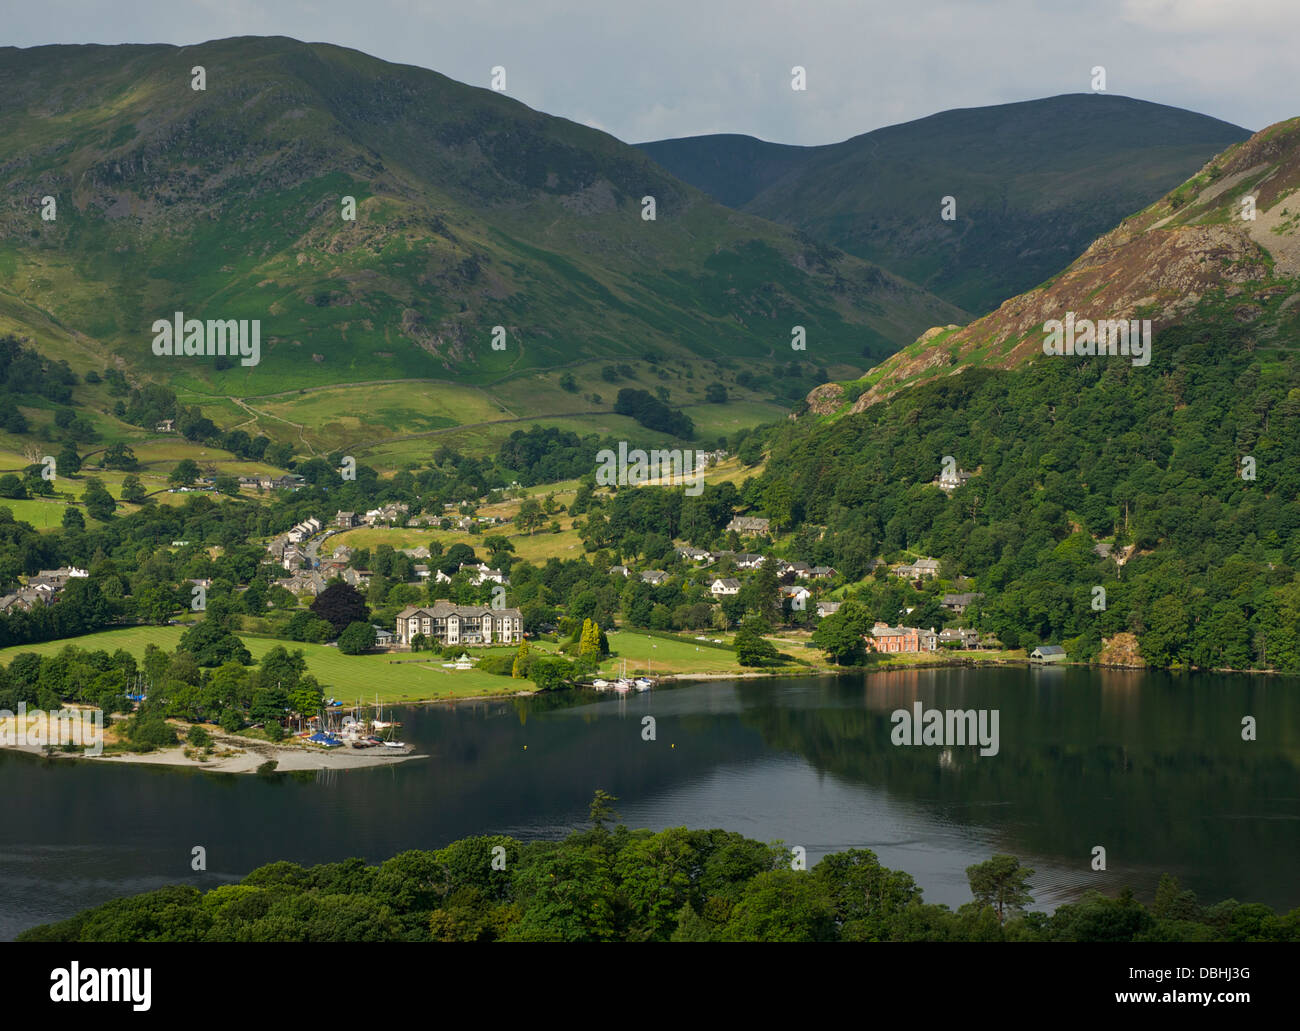 Le village de Glenridding, sur la rive d'Ullswater, Parc National de Lake District, Cumbria, Angleterre, Royaume-Uni Banque D'Images